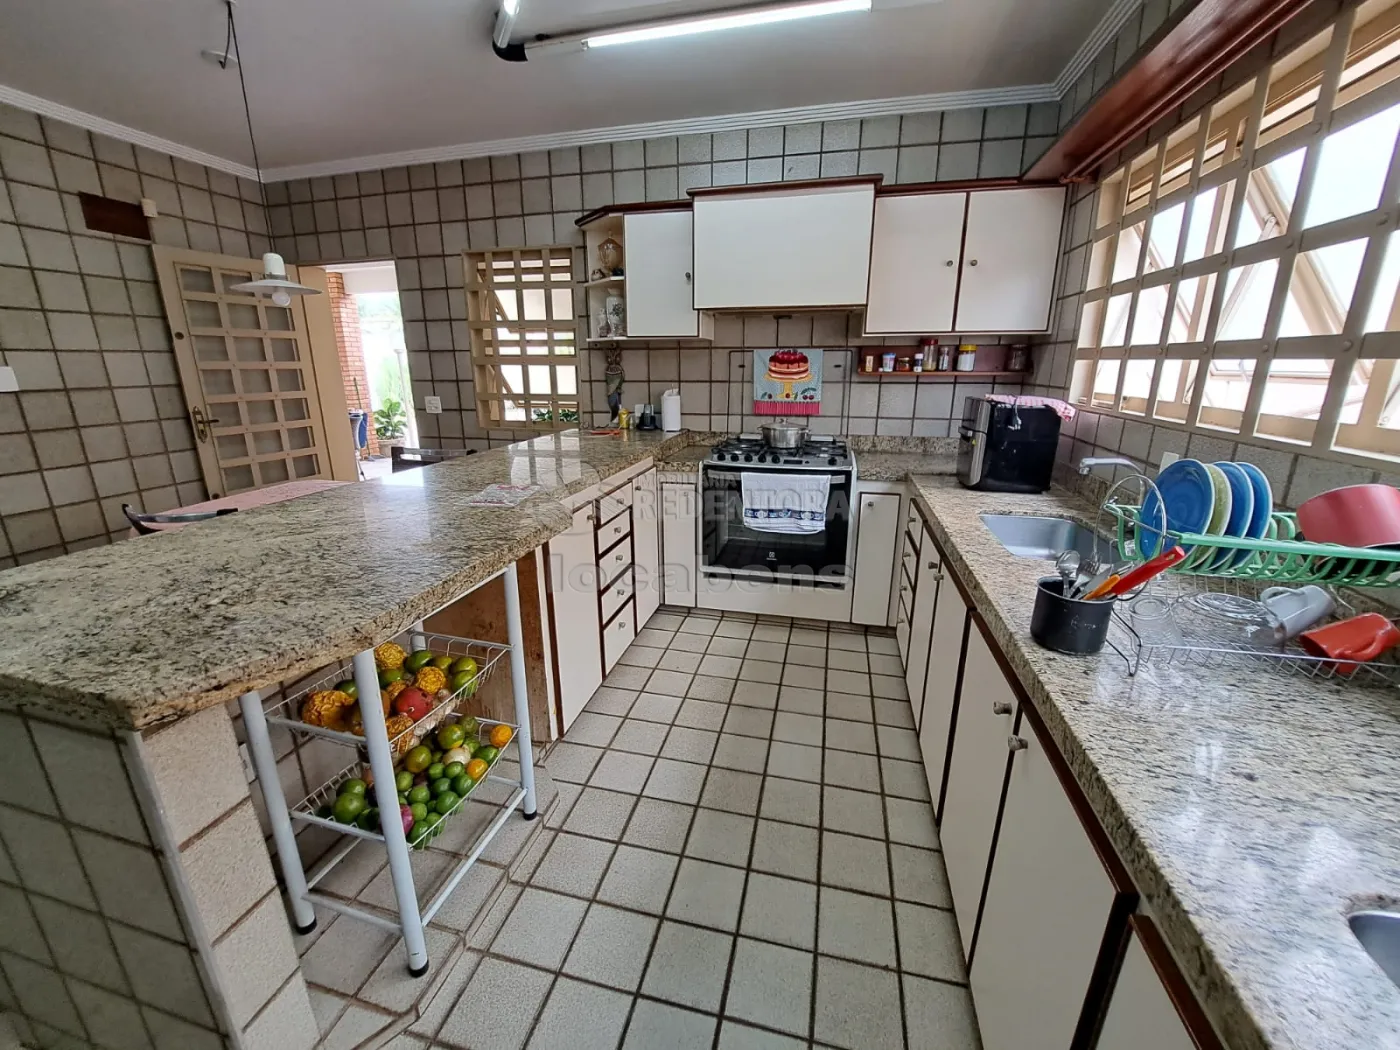 Alugar Casa / Padrão em São José do Rio Preto apenas R$ 4.800,00 - Foto 10